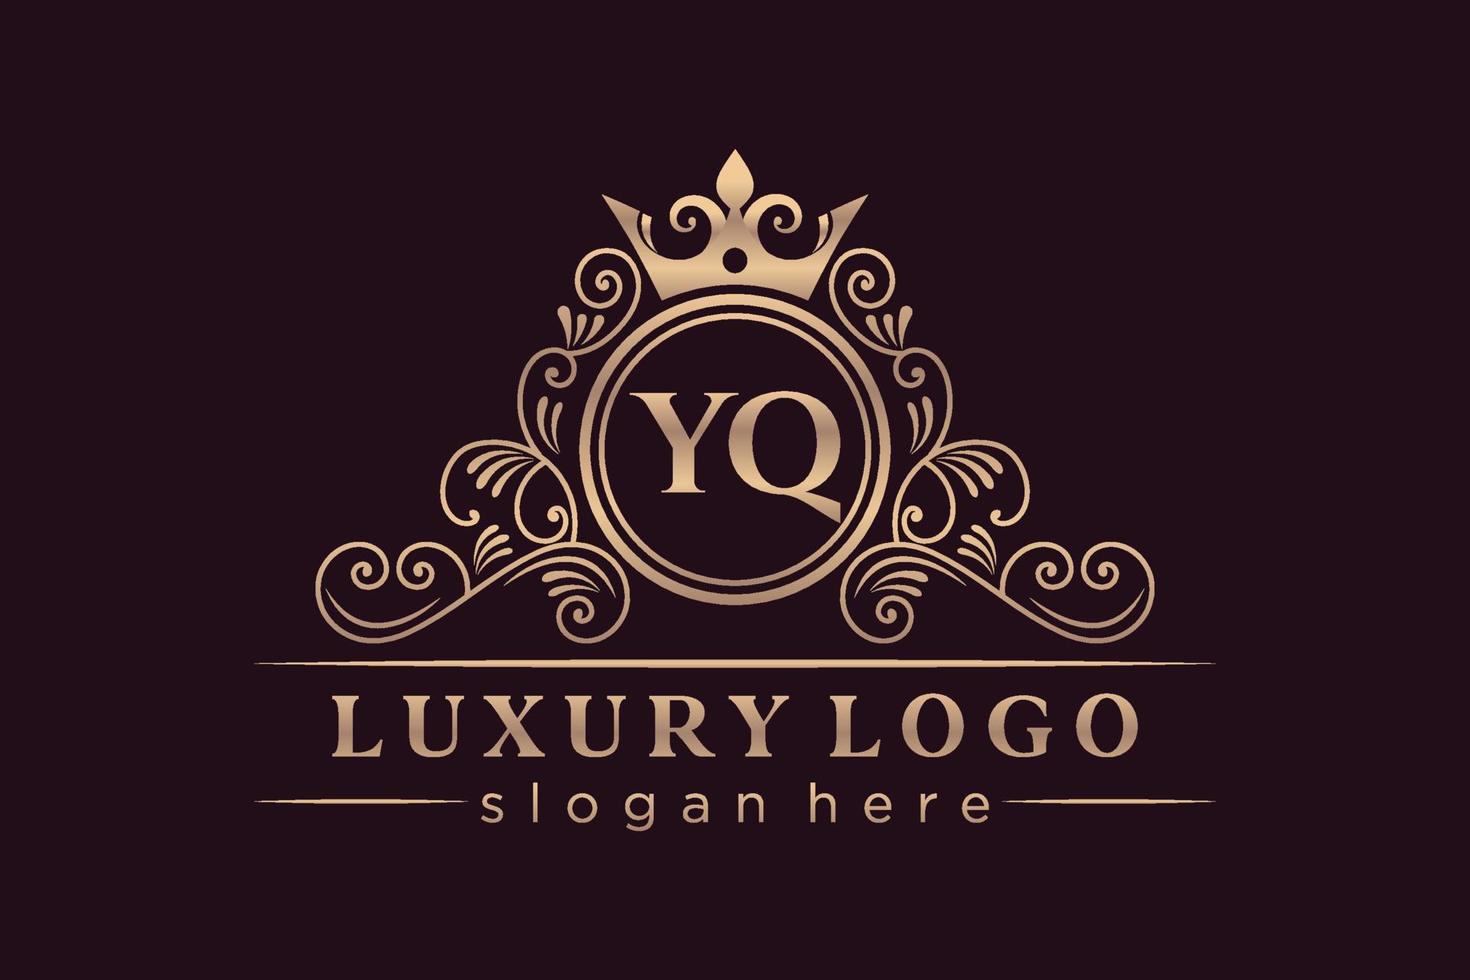 yq letra inicial oro caligráfico femenino floral dibujado a mano monograma heráldico antiguo estilo vintage diseño de logotipo de lujo vector premium